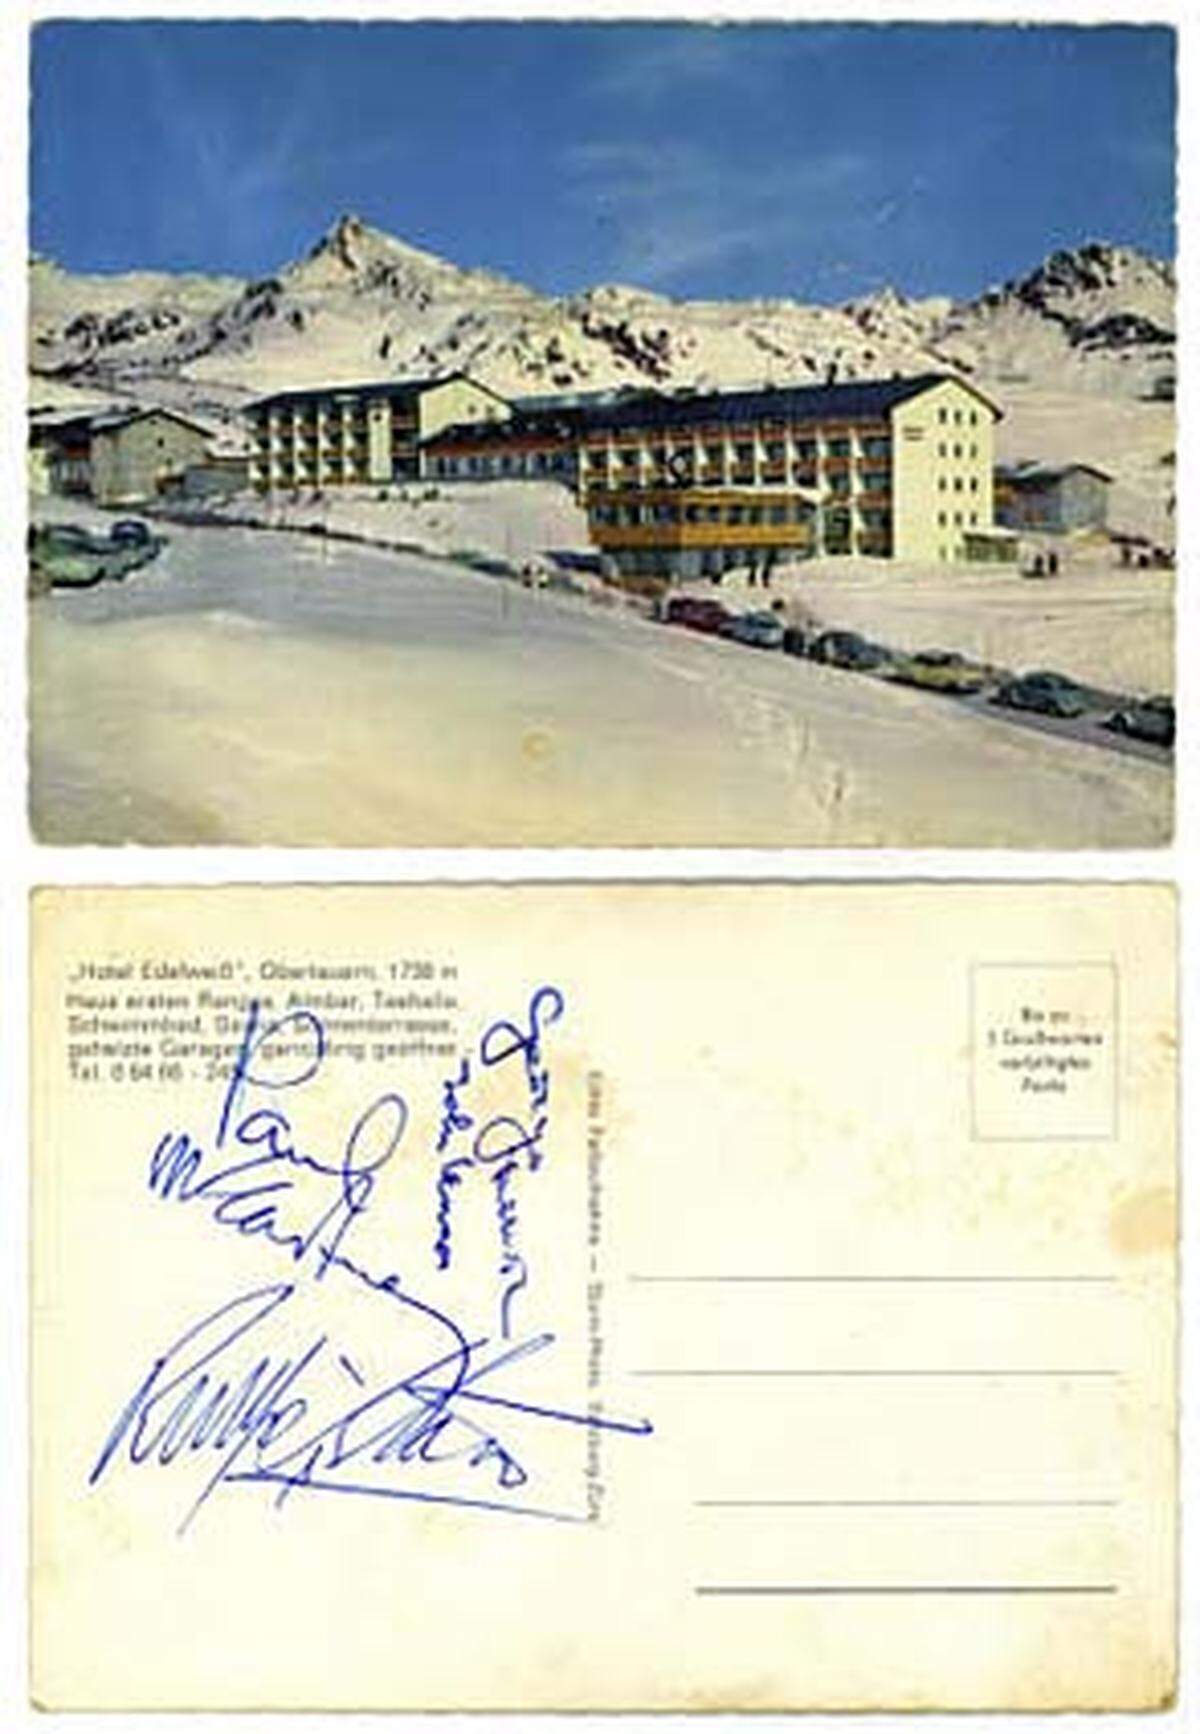  Im Bild: Postkarte von Obertauern mit den Unterschriften der Beatles